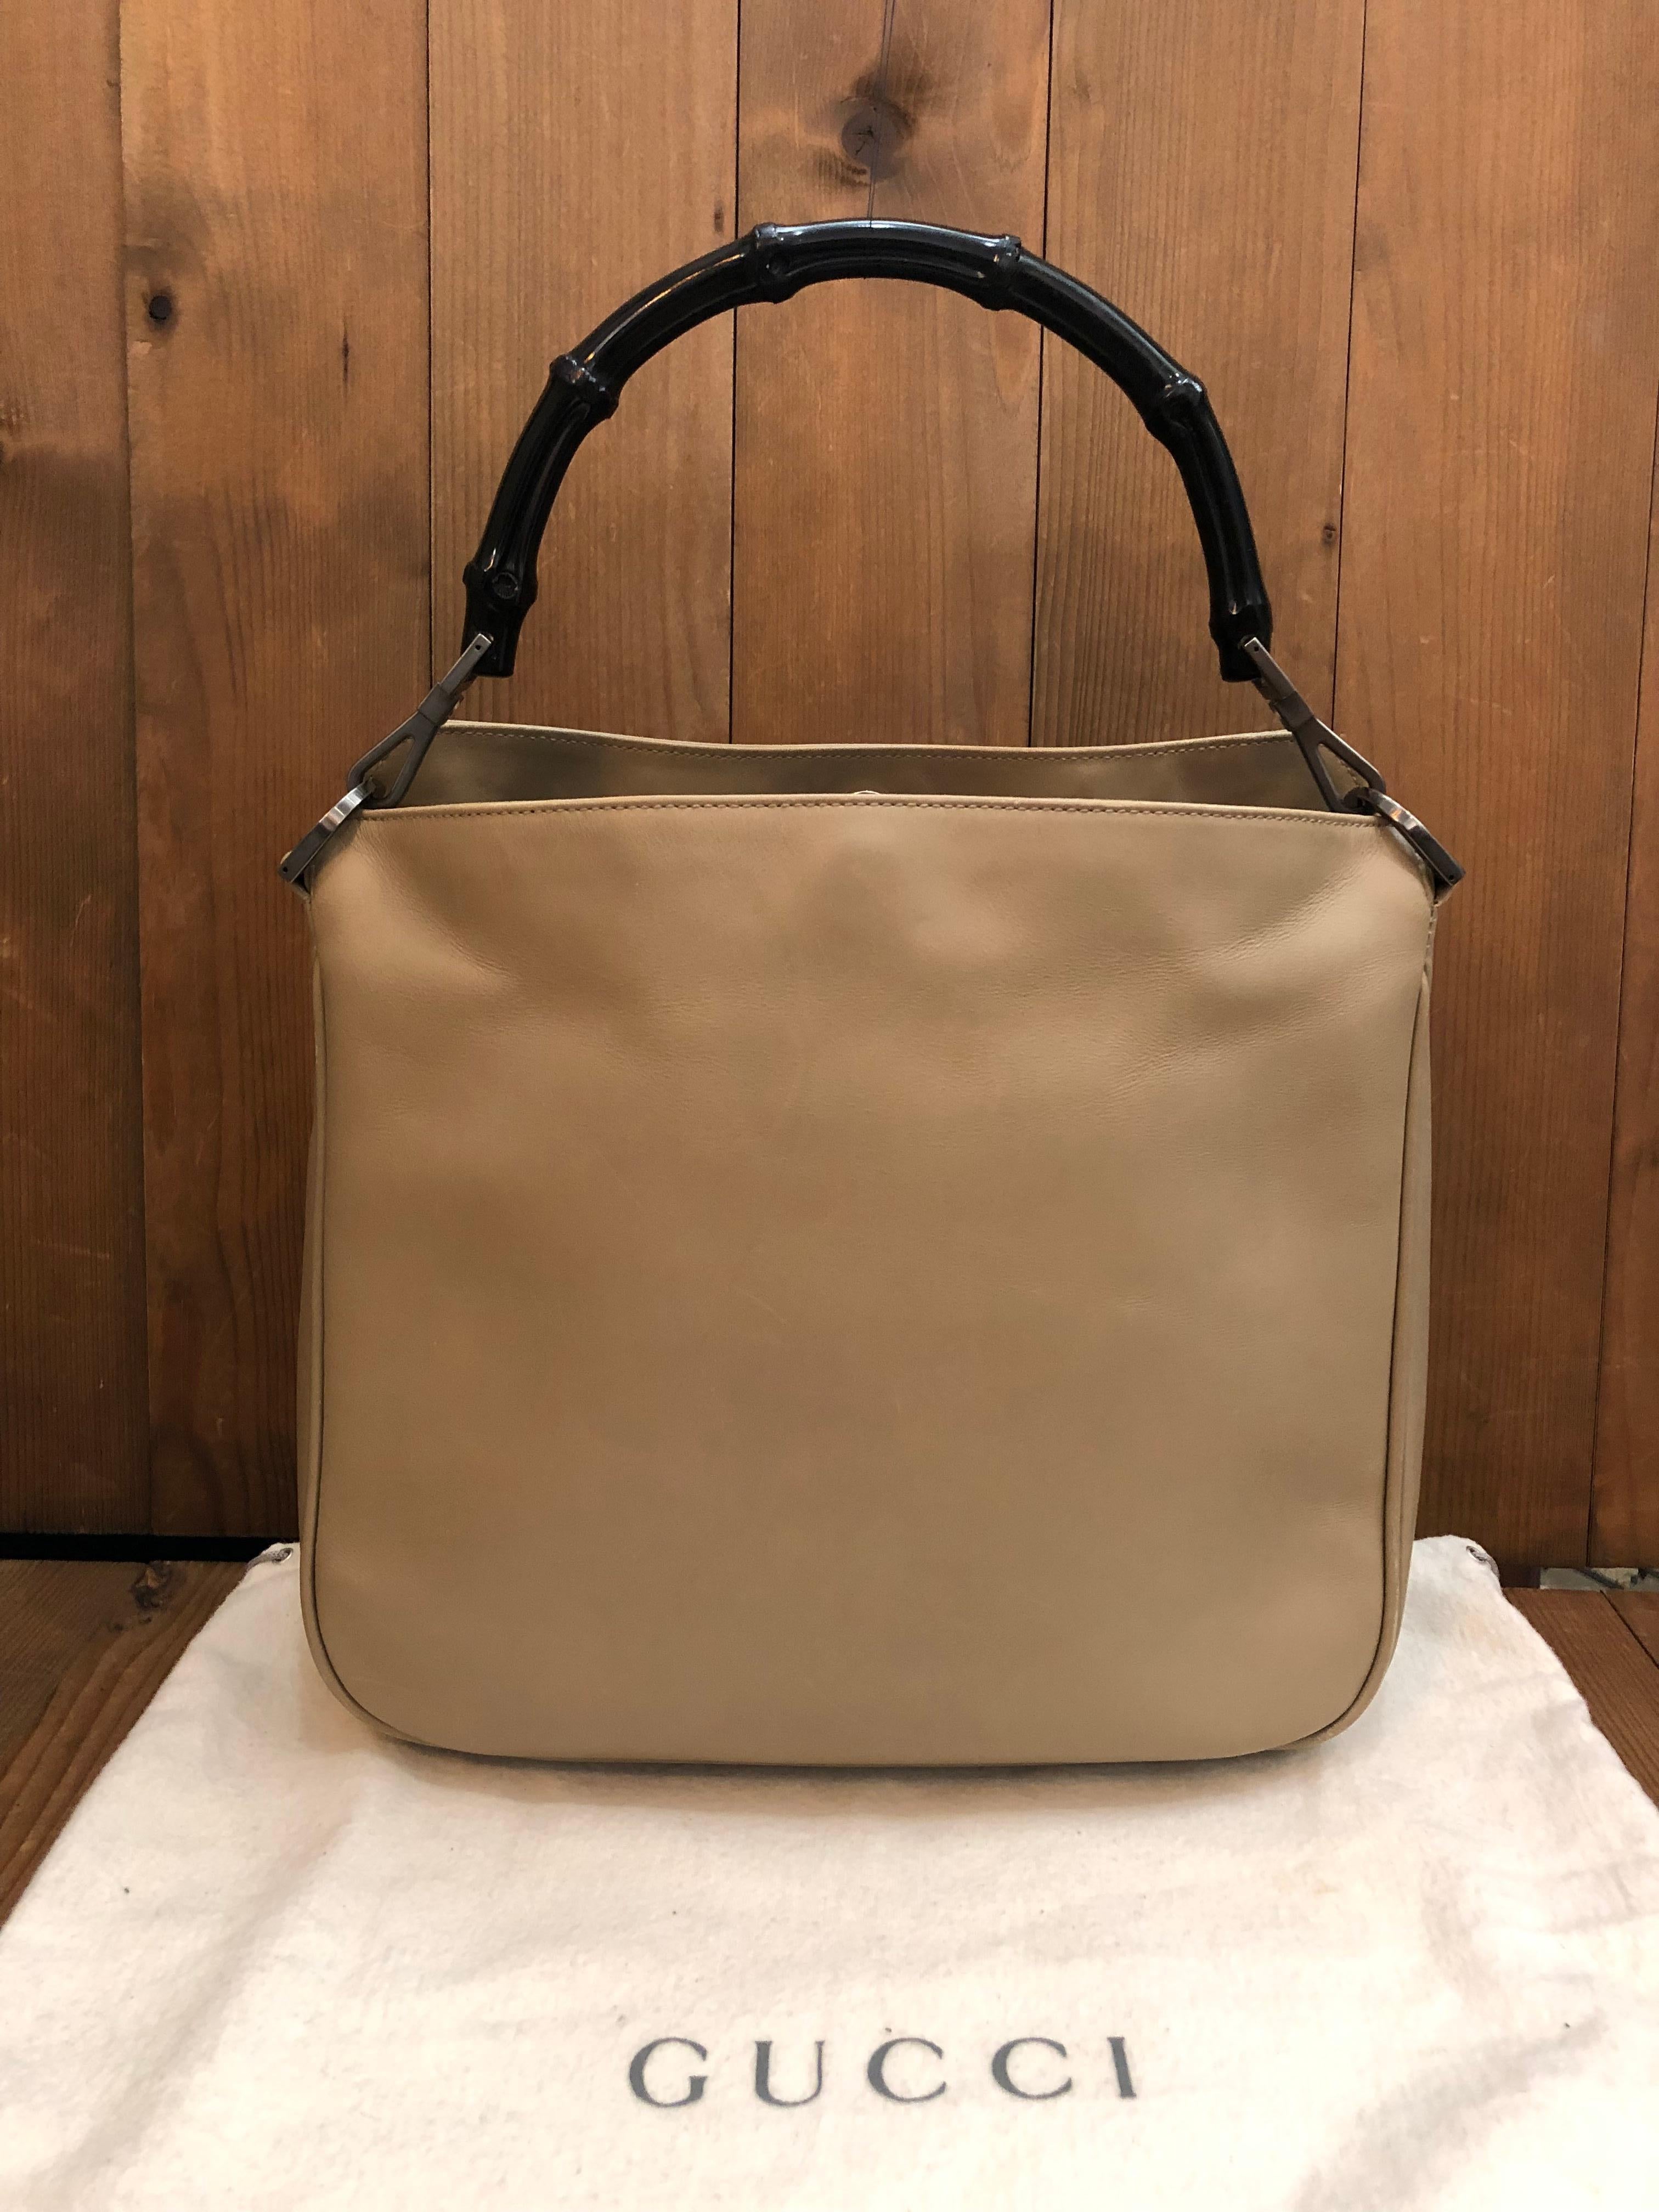 Ce sac à bandoulière vintage de Gucci est réalisé en cuir de veau lisse de couleur beige, avec des accessoires chromés noirs et une anse en bambou émaillée noire. La fermeture magnétique supérieure ouvre sur un nouvel intérieur en jacquard